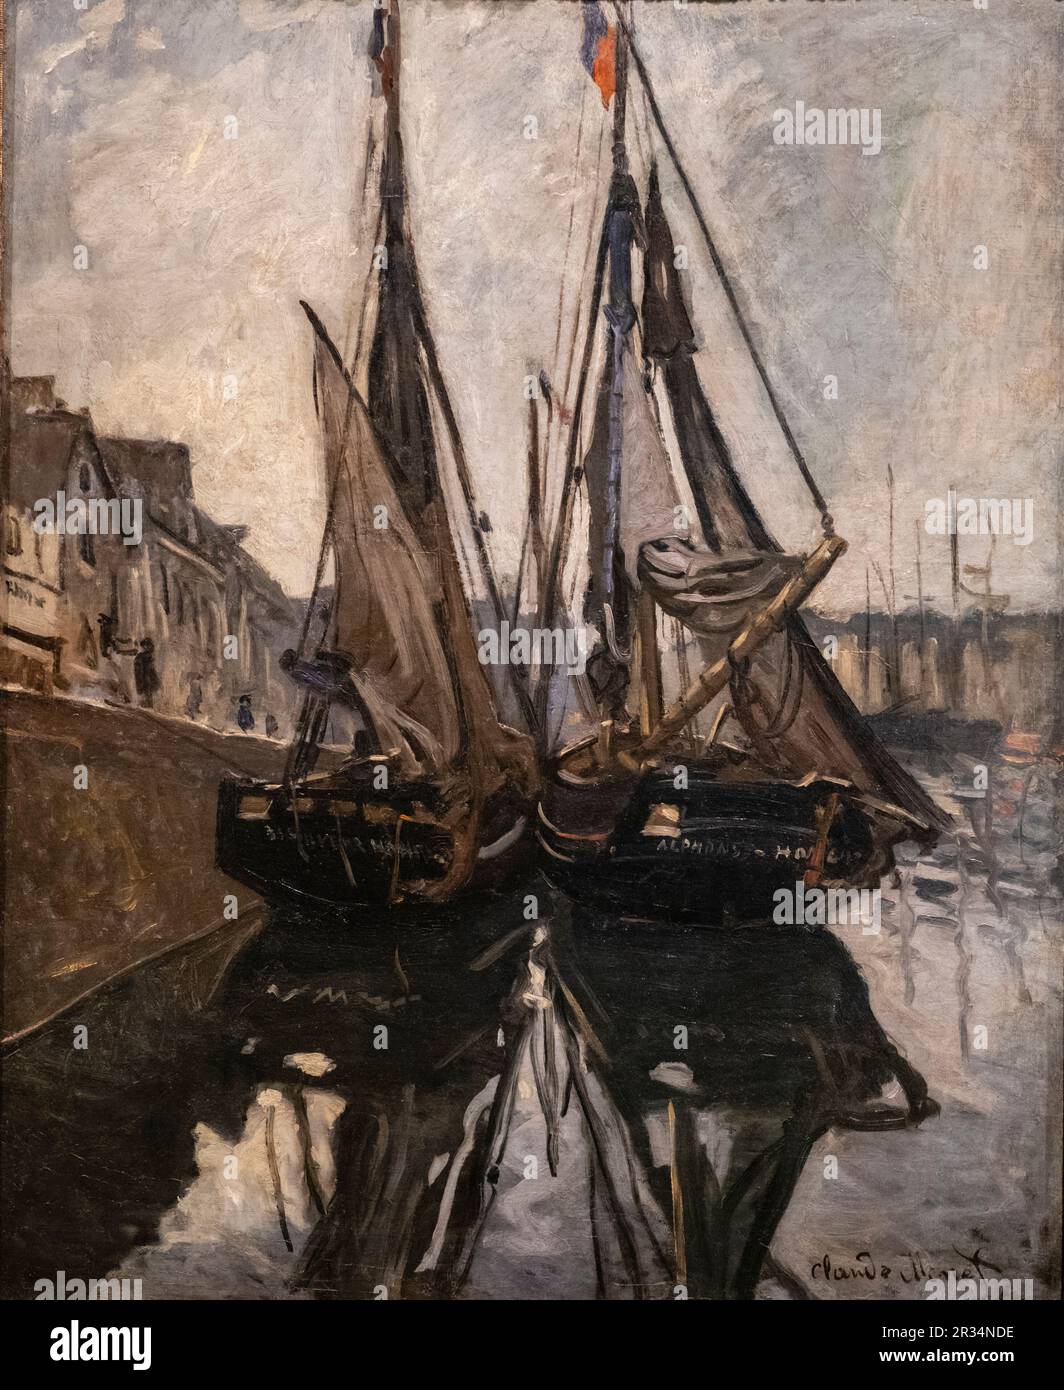 barcos, Monet, francia 1868, oleo sobre tela, Fundación Calouste Gulbenkian, («Fundação Calouste Gulbenkian»), Lisboa, Portugal. Stock Photo